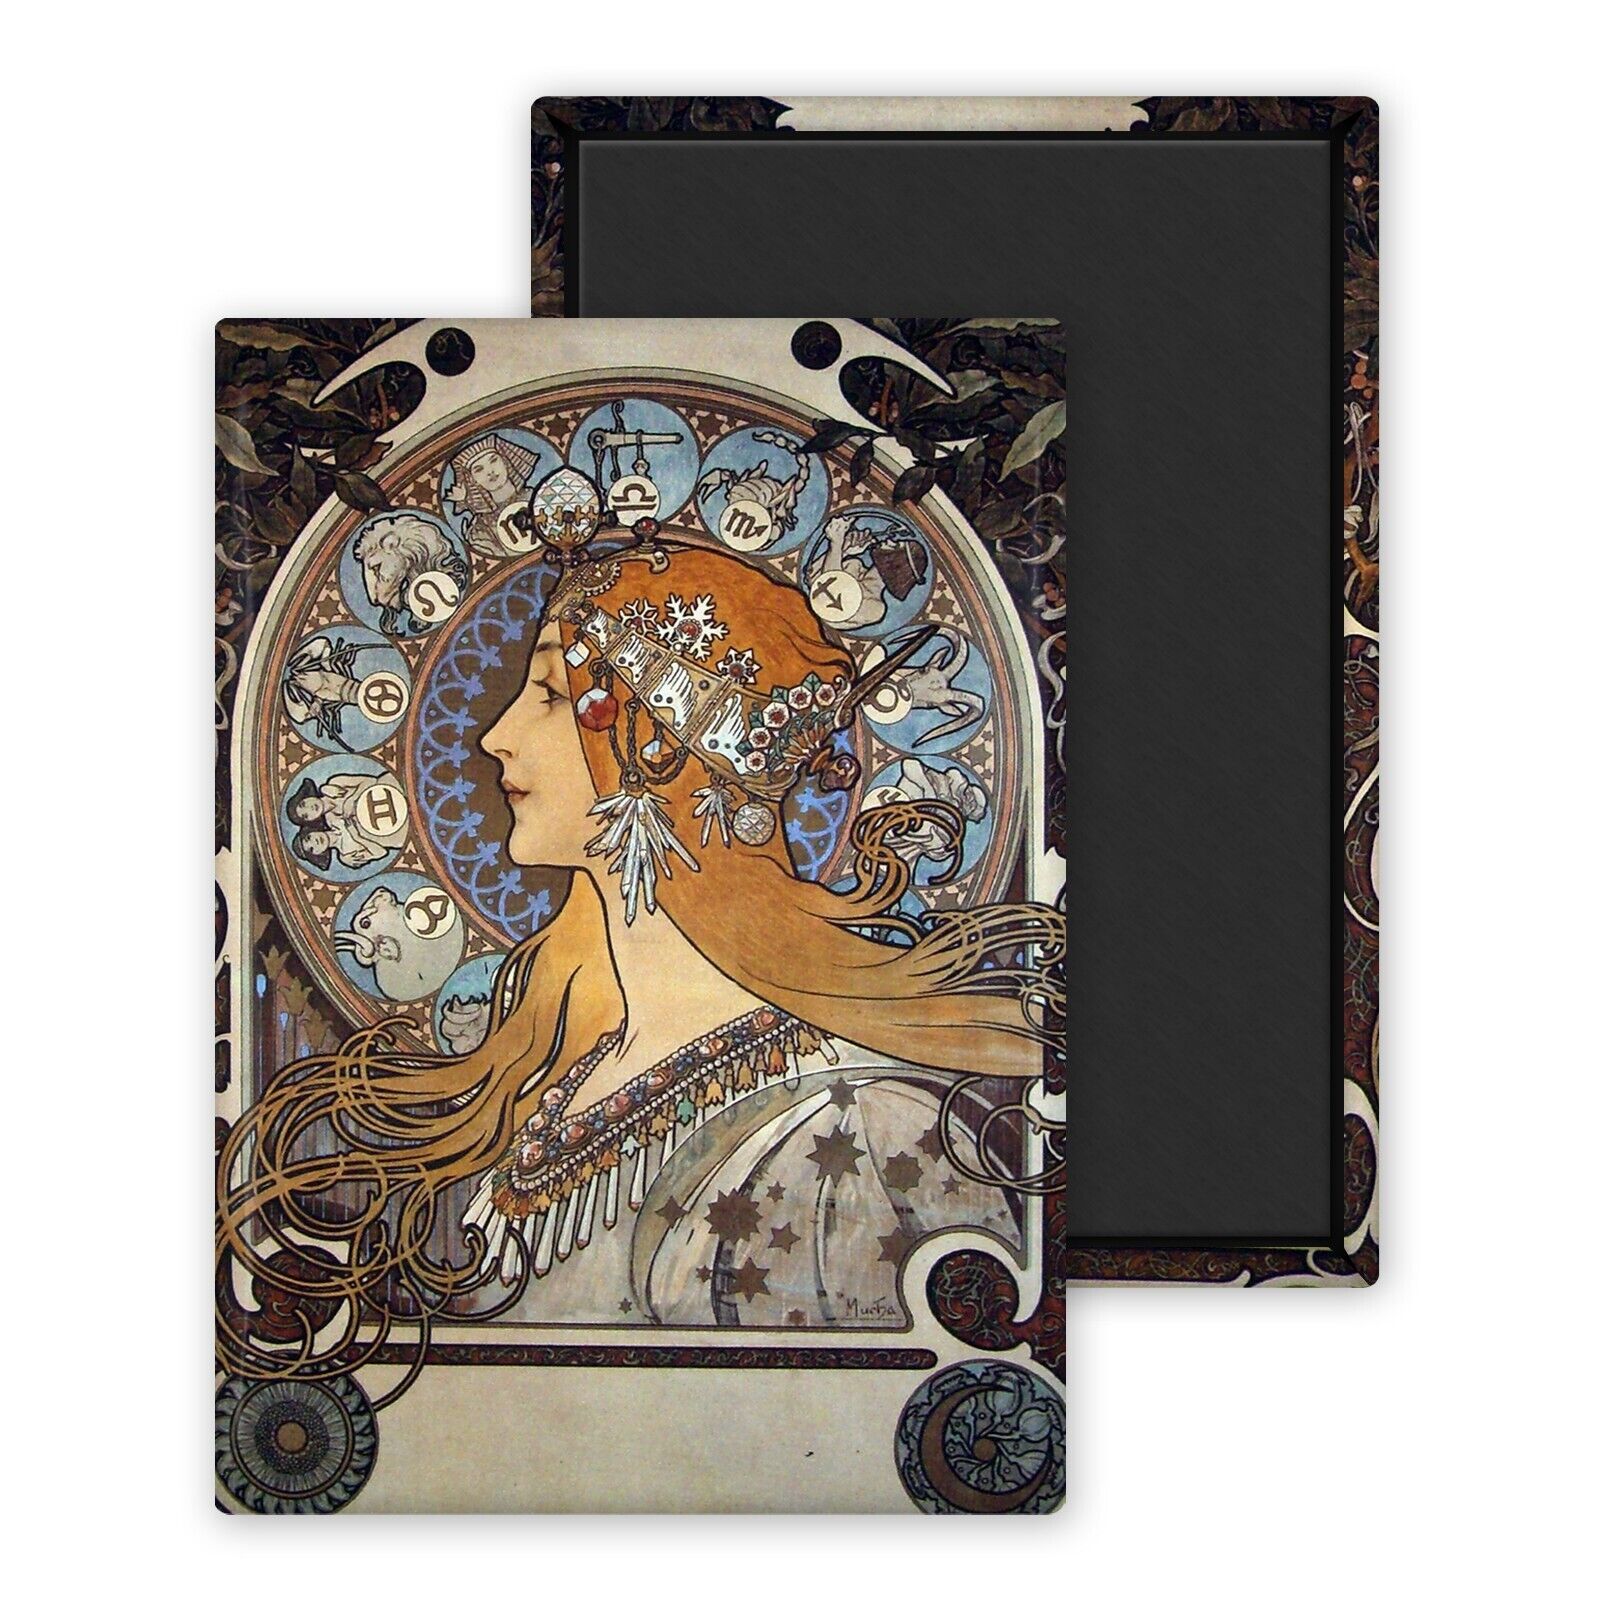 Zodiacal calendar for La Plume-Mucha Alphonse-Magnet fridge 54x78mm